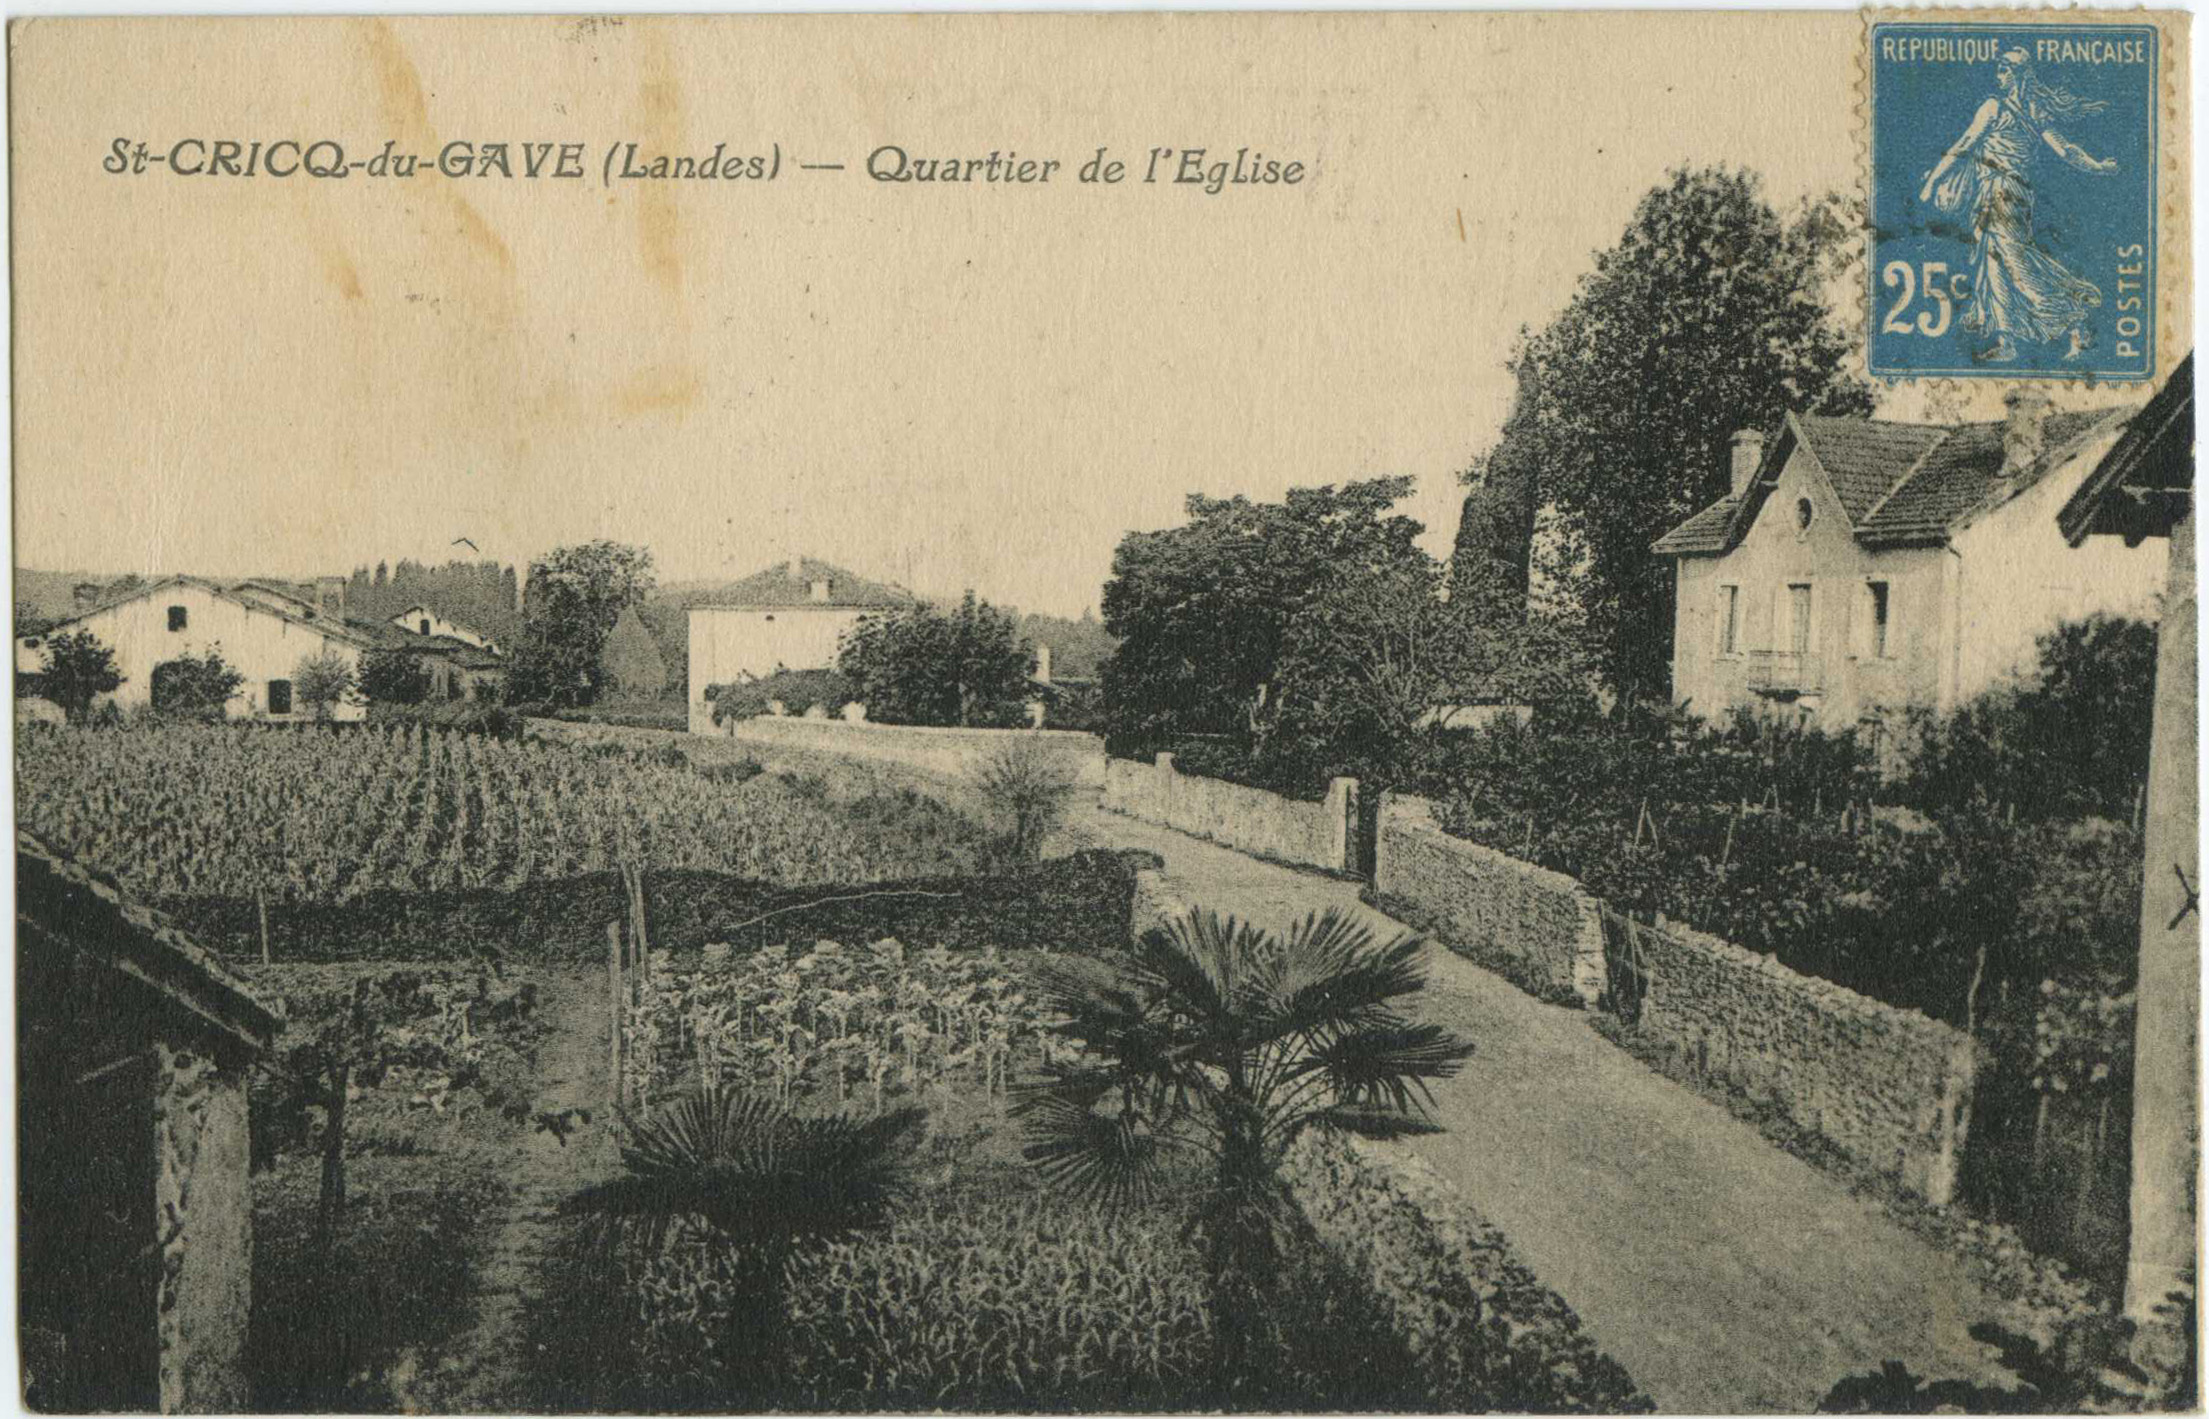 Saint-Cricq-du-Gave - Quartier de l'Eglise